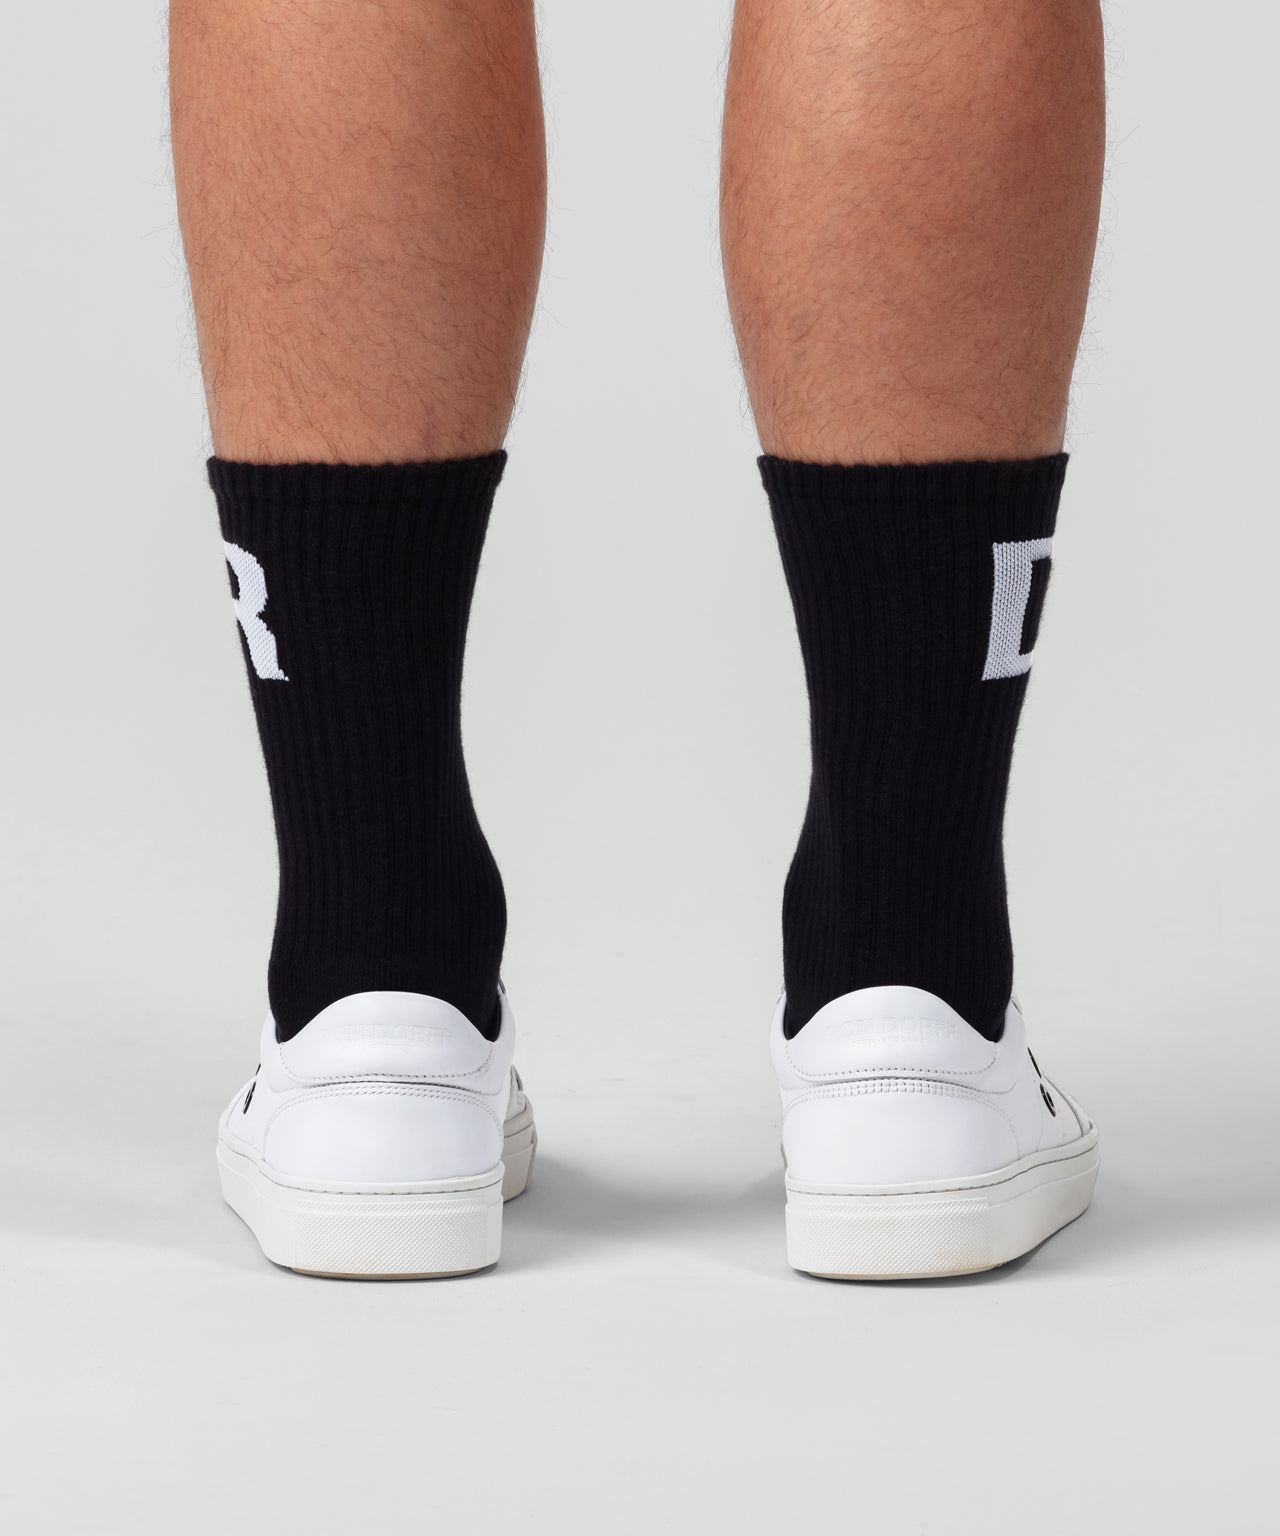 Sports Socks RD: Black